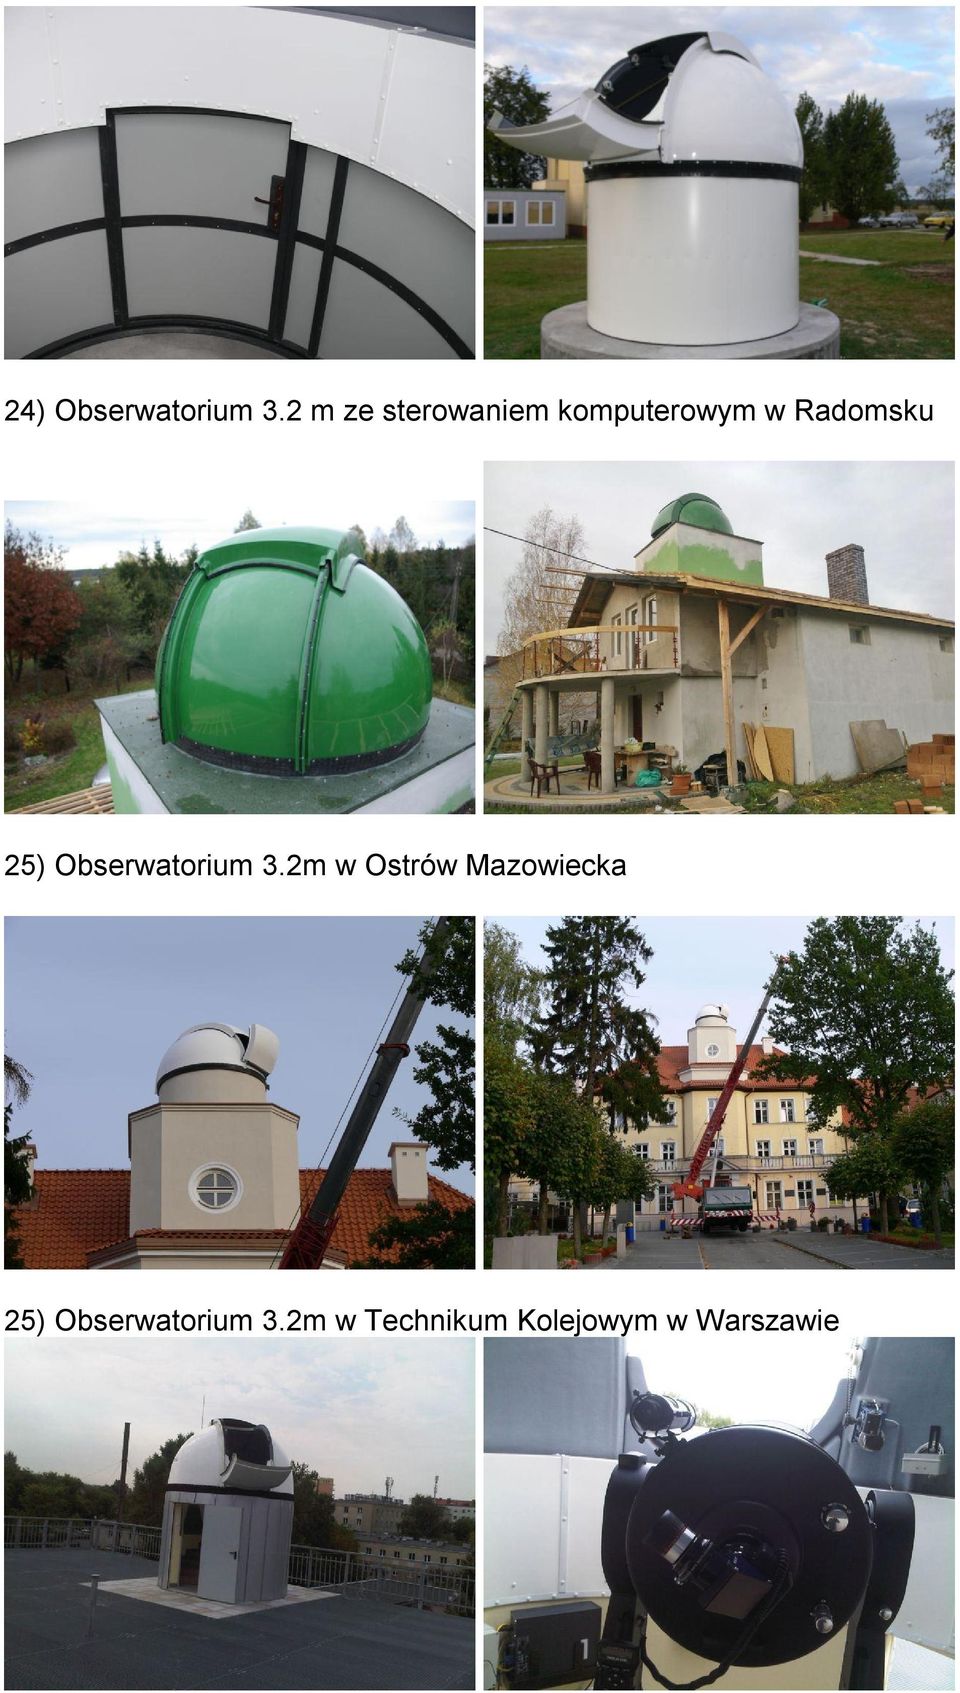 Radomsku 25) Obserwatorium 3.